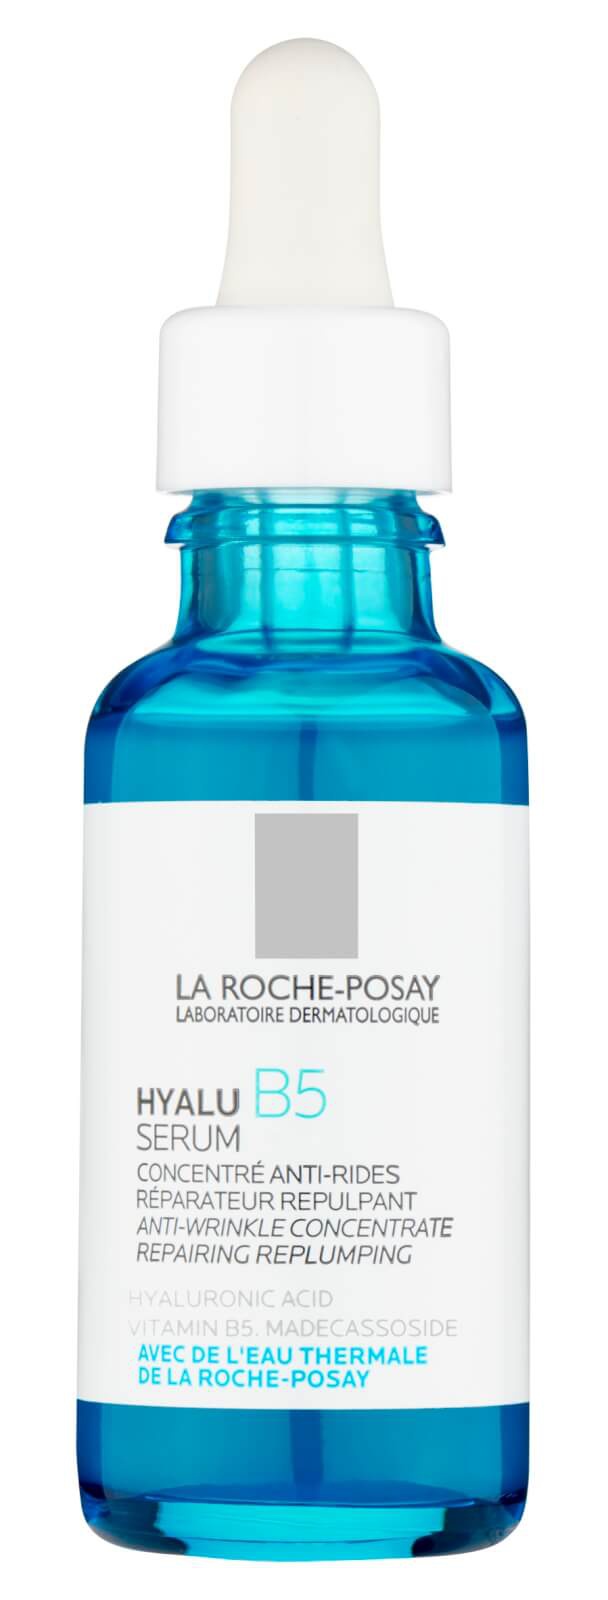 La Roche-Posay Hyalu B5 Hyaluronic Acid Serum